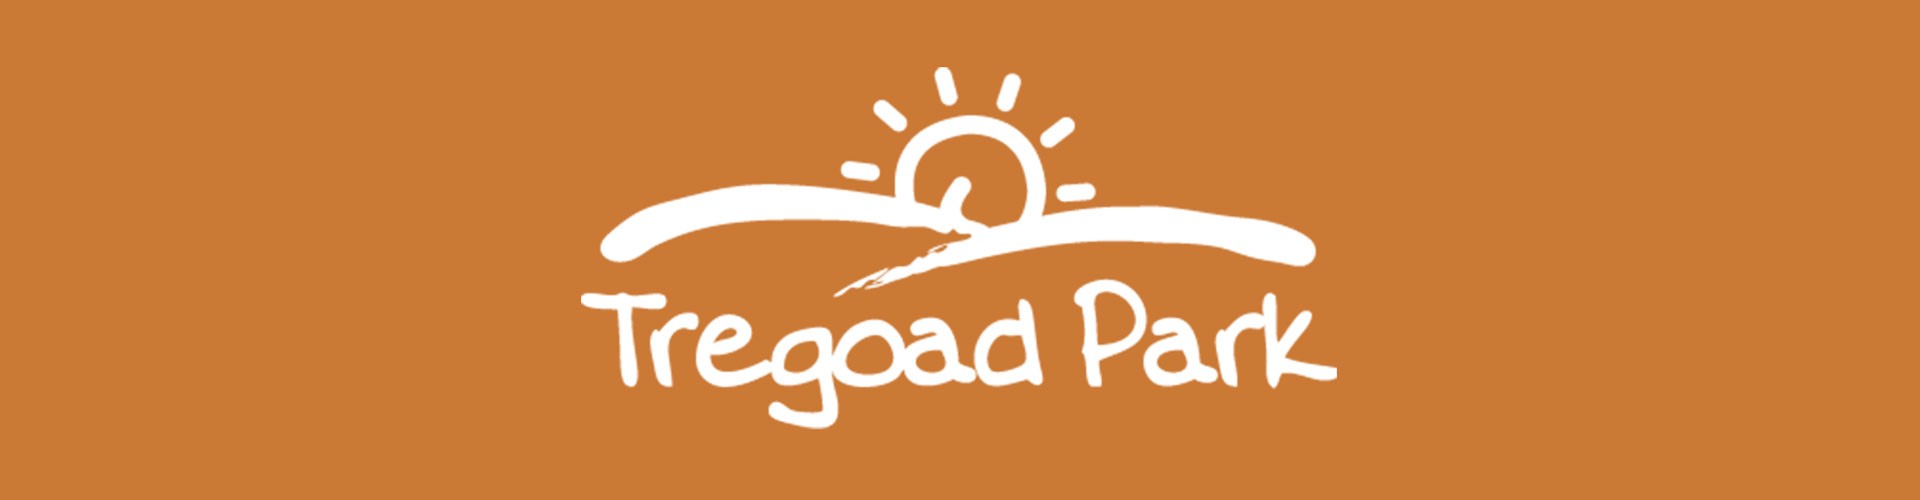 tregoad logo on orange background